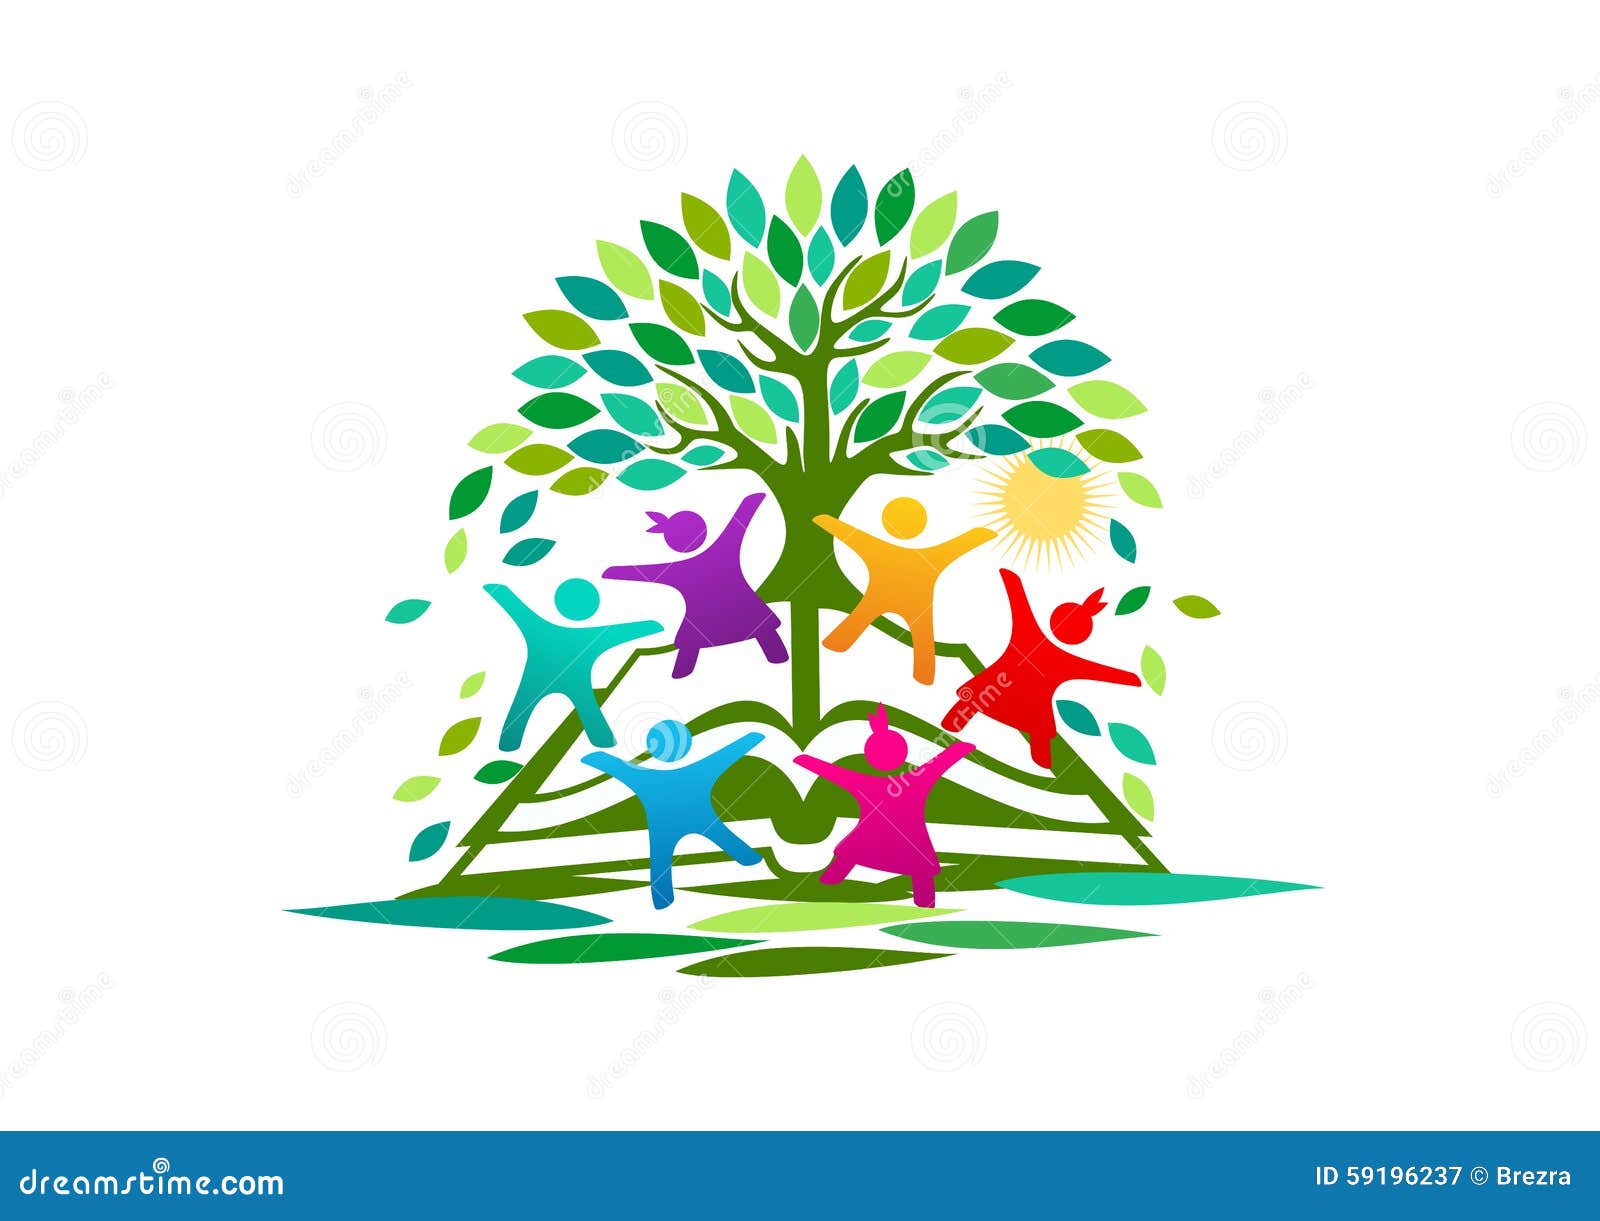 tree, knowledge, logo,open book, children, , bright education  concept 